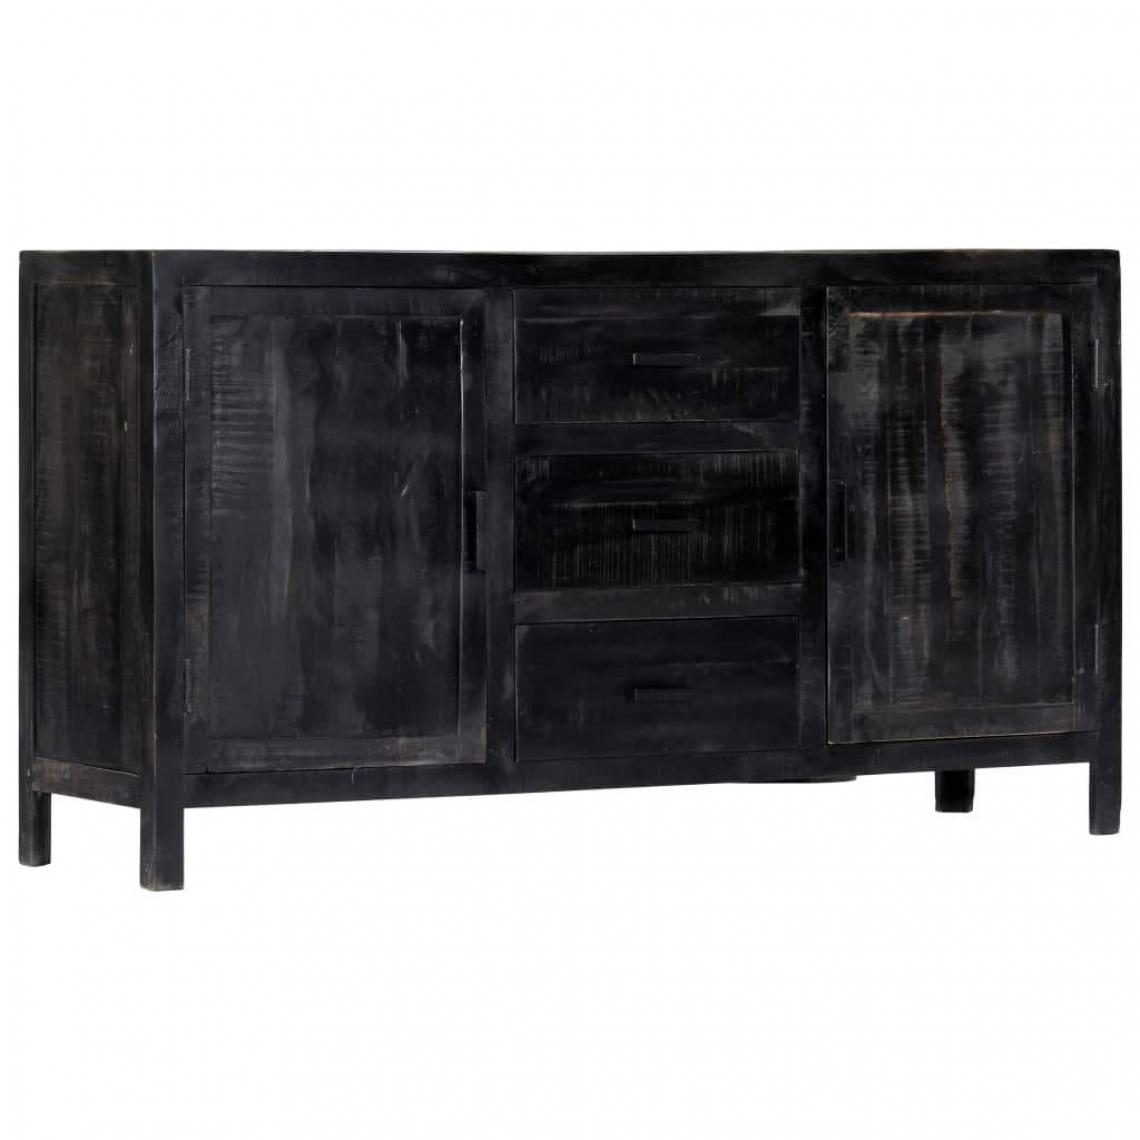 Helloshop26 - Buffet bahut armoire console meuble de rangement noir 147 cm bois de manguier massif 4402149 - Consoles